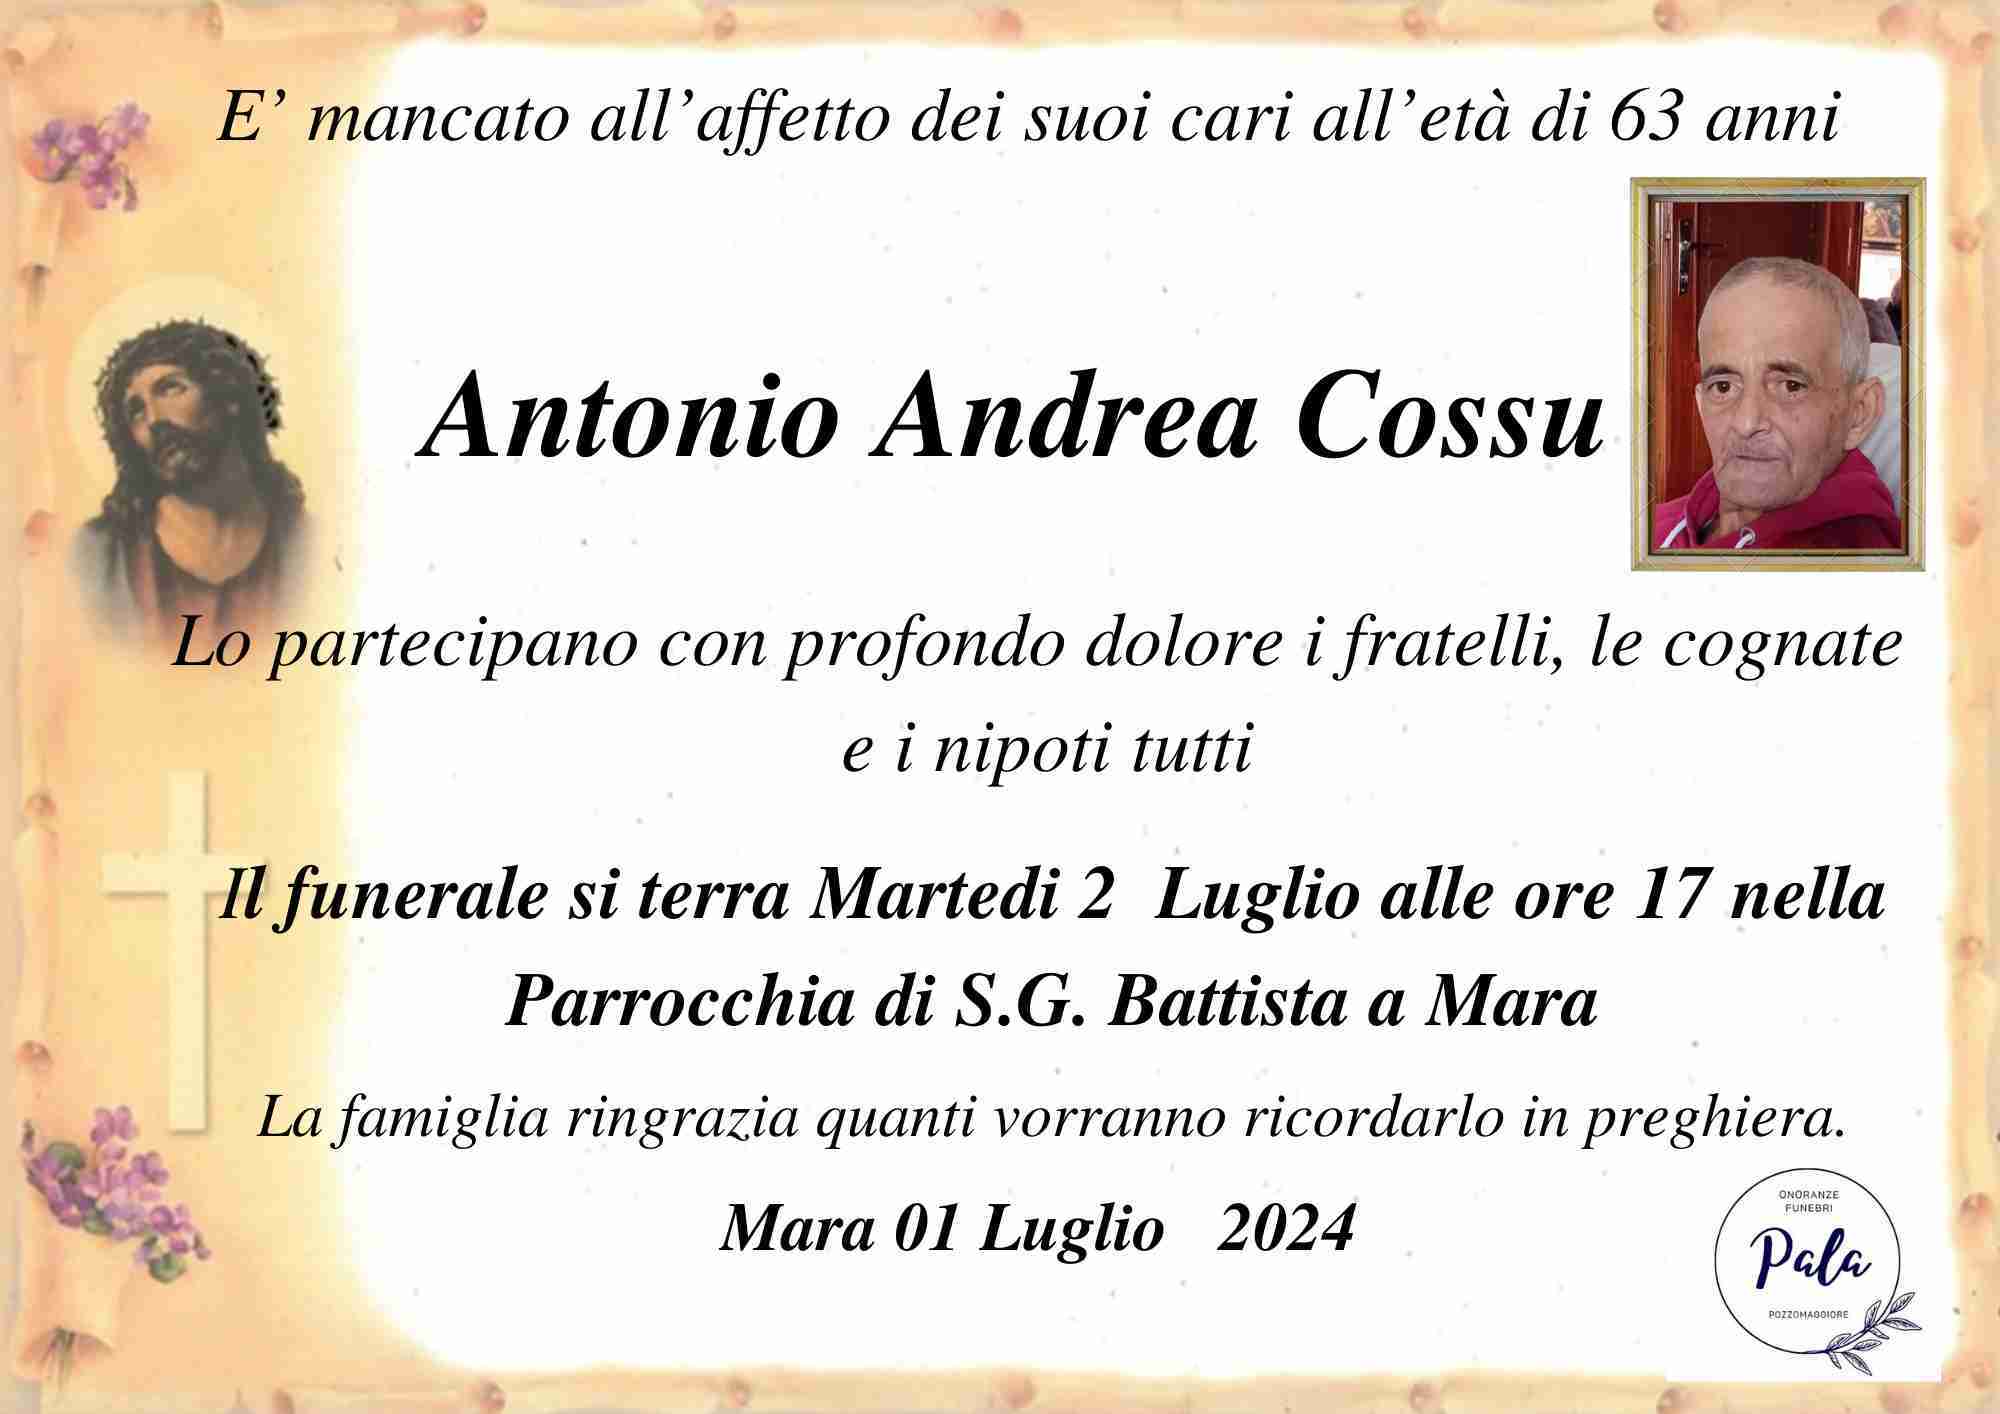 Antonio Andrea Cossu